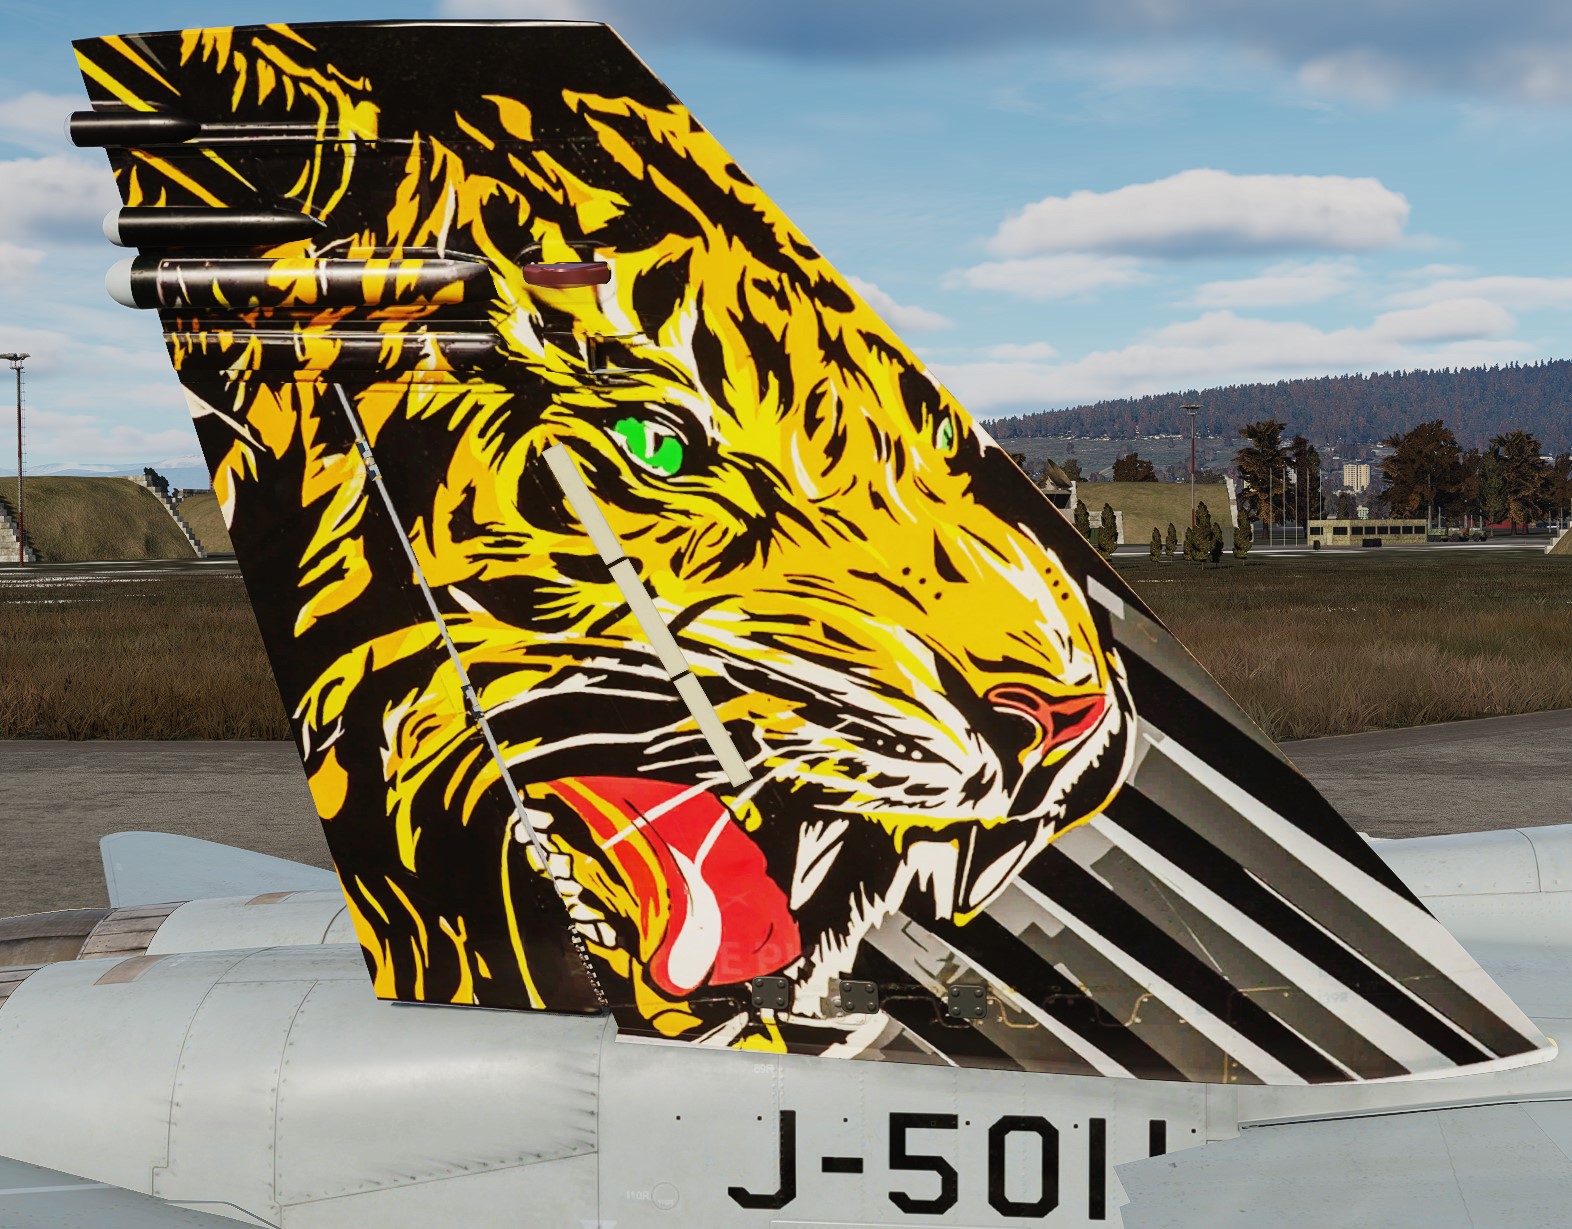 Swiss Air Force J-5011 Tigers 2016